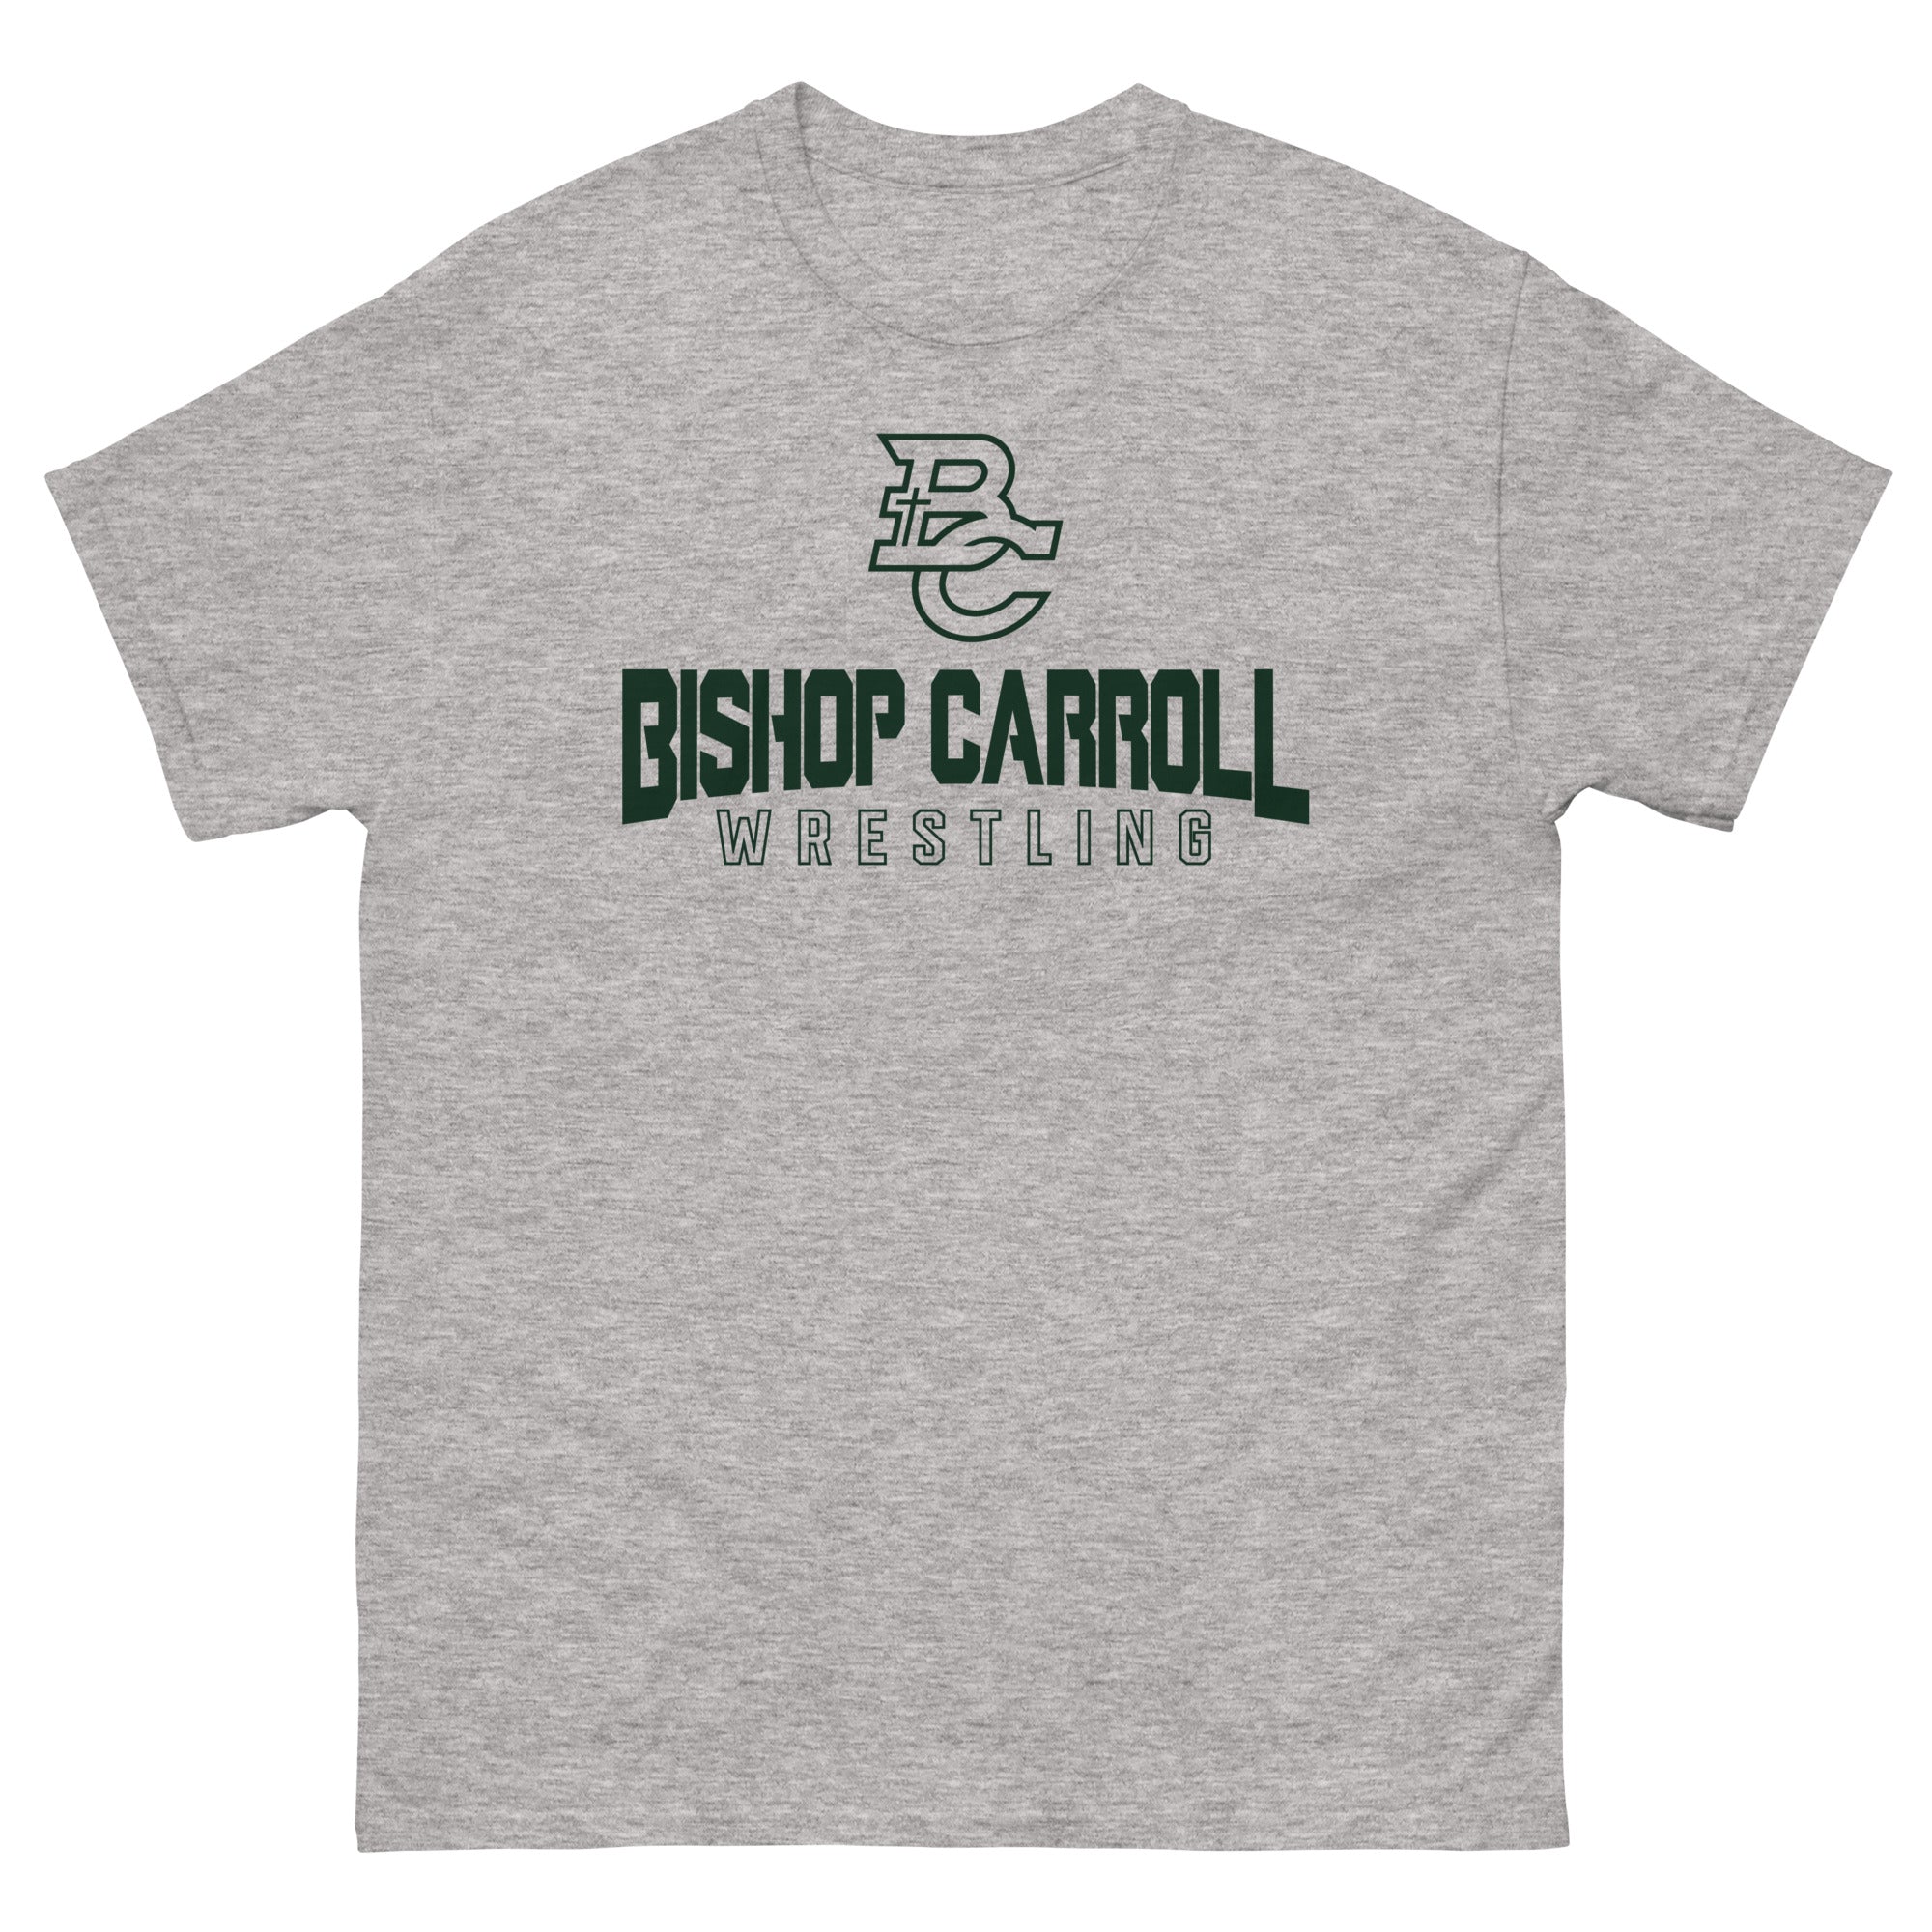 Bishop Carroll Wrestling Men's classic tee